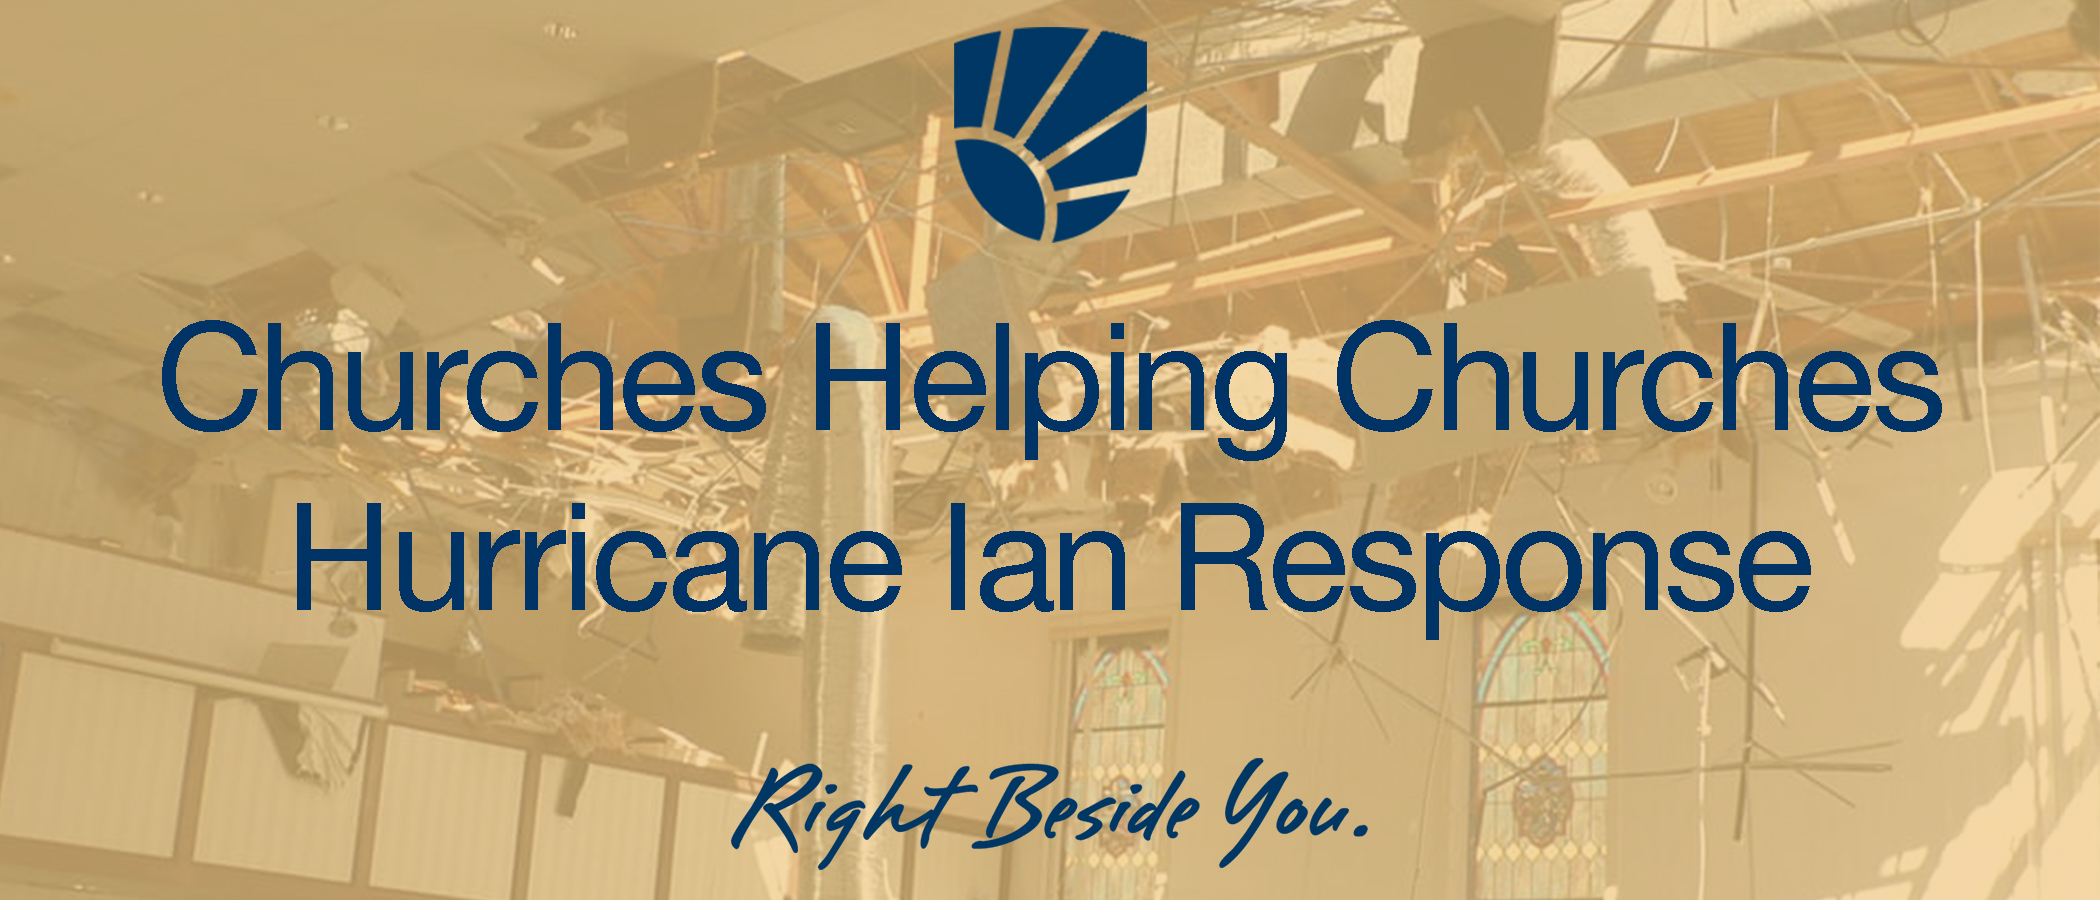 Churches Helping Churches, Hurricane Ian Response